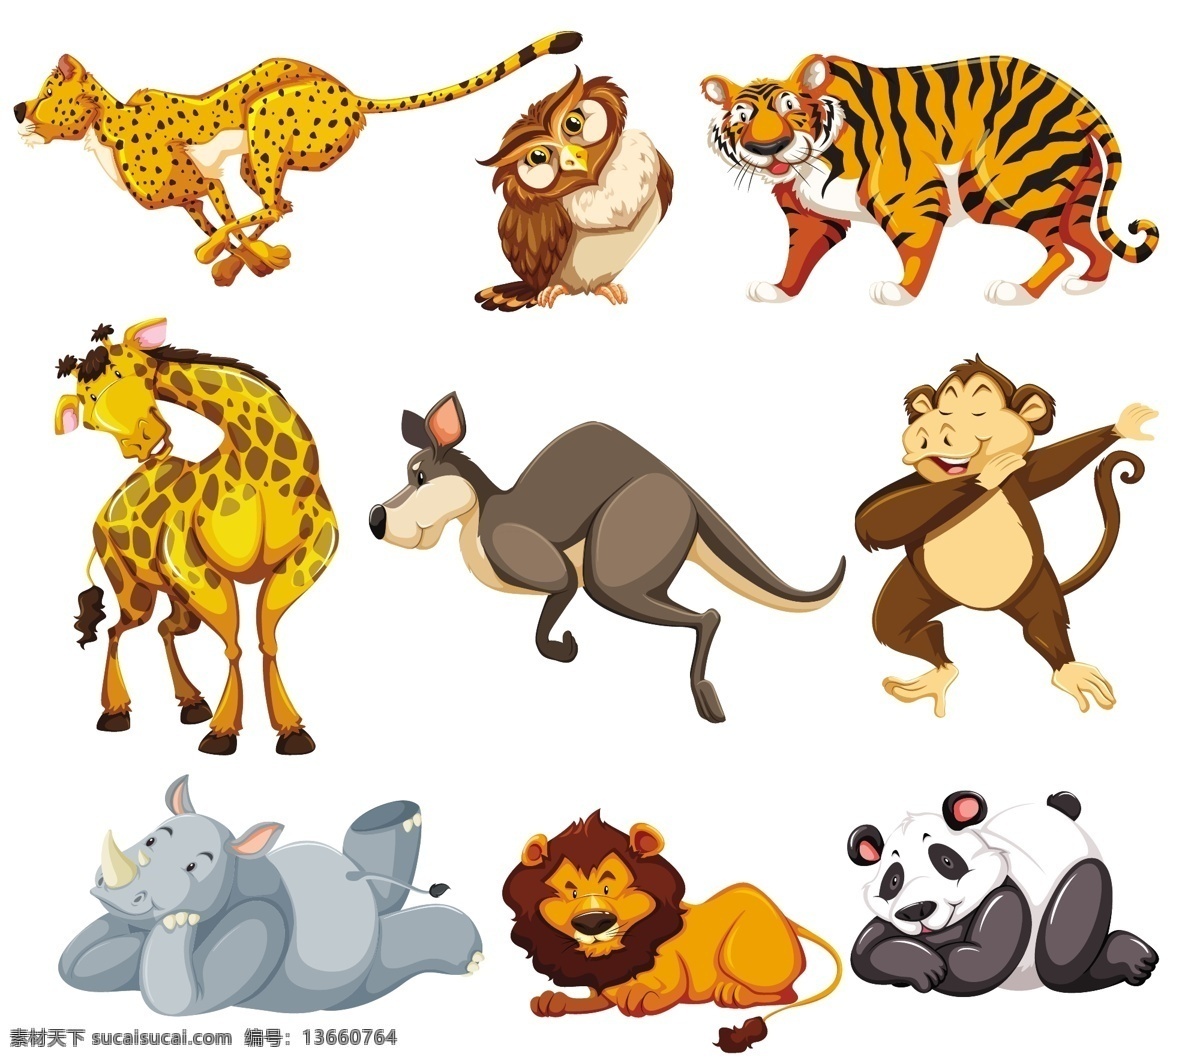 卡通动物素材 野生动物 手绘动物 动物 素描 手绘 卡通动物园 动物园 卡通 可爱动物 小动物 动物贴纸 卡通动物生物 生物世界